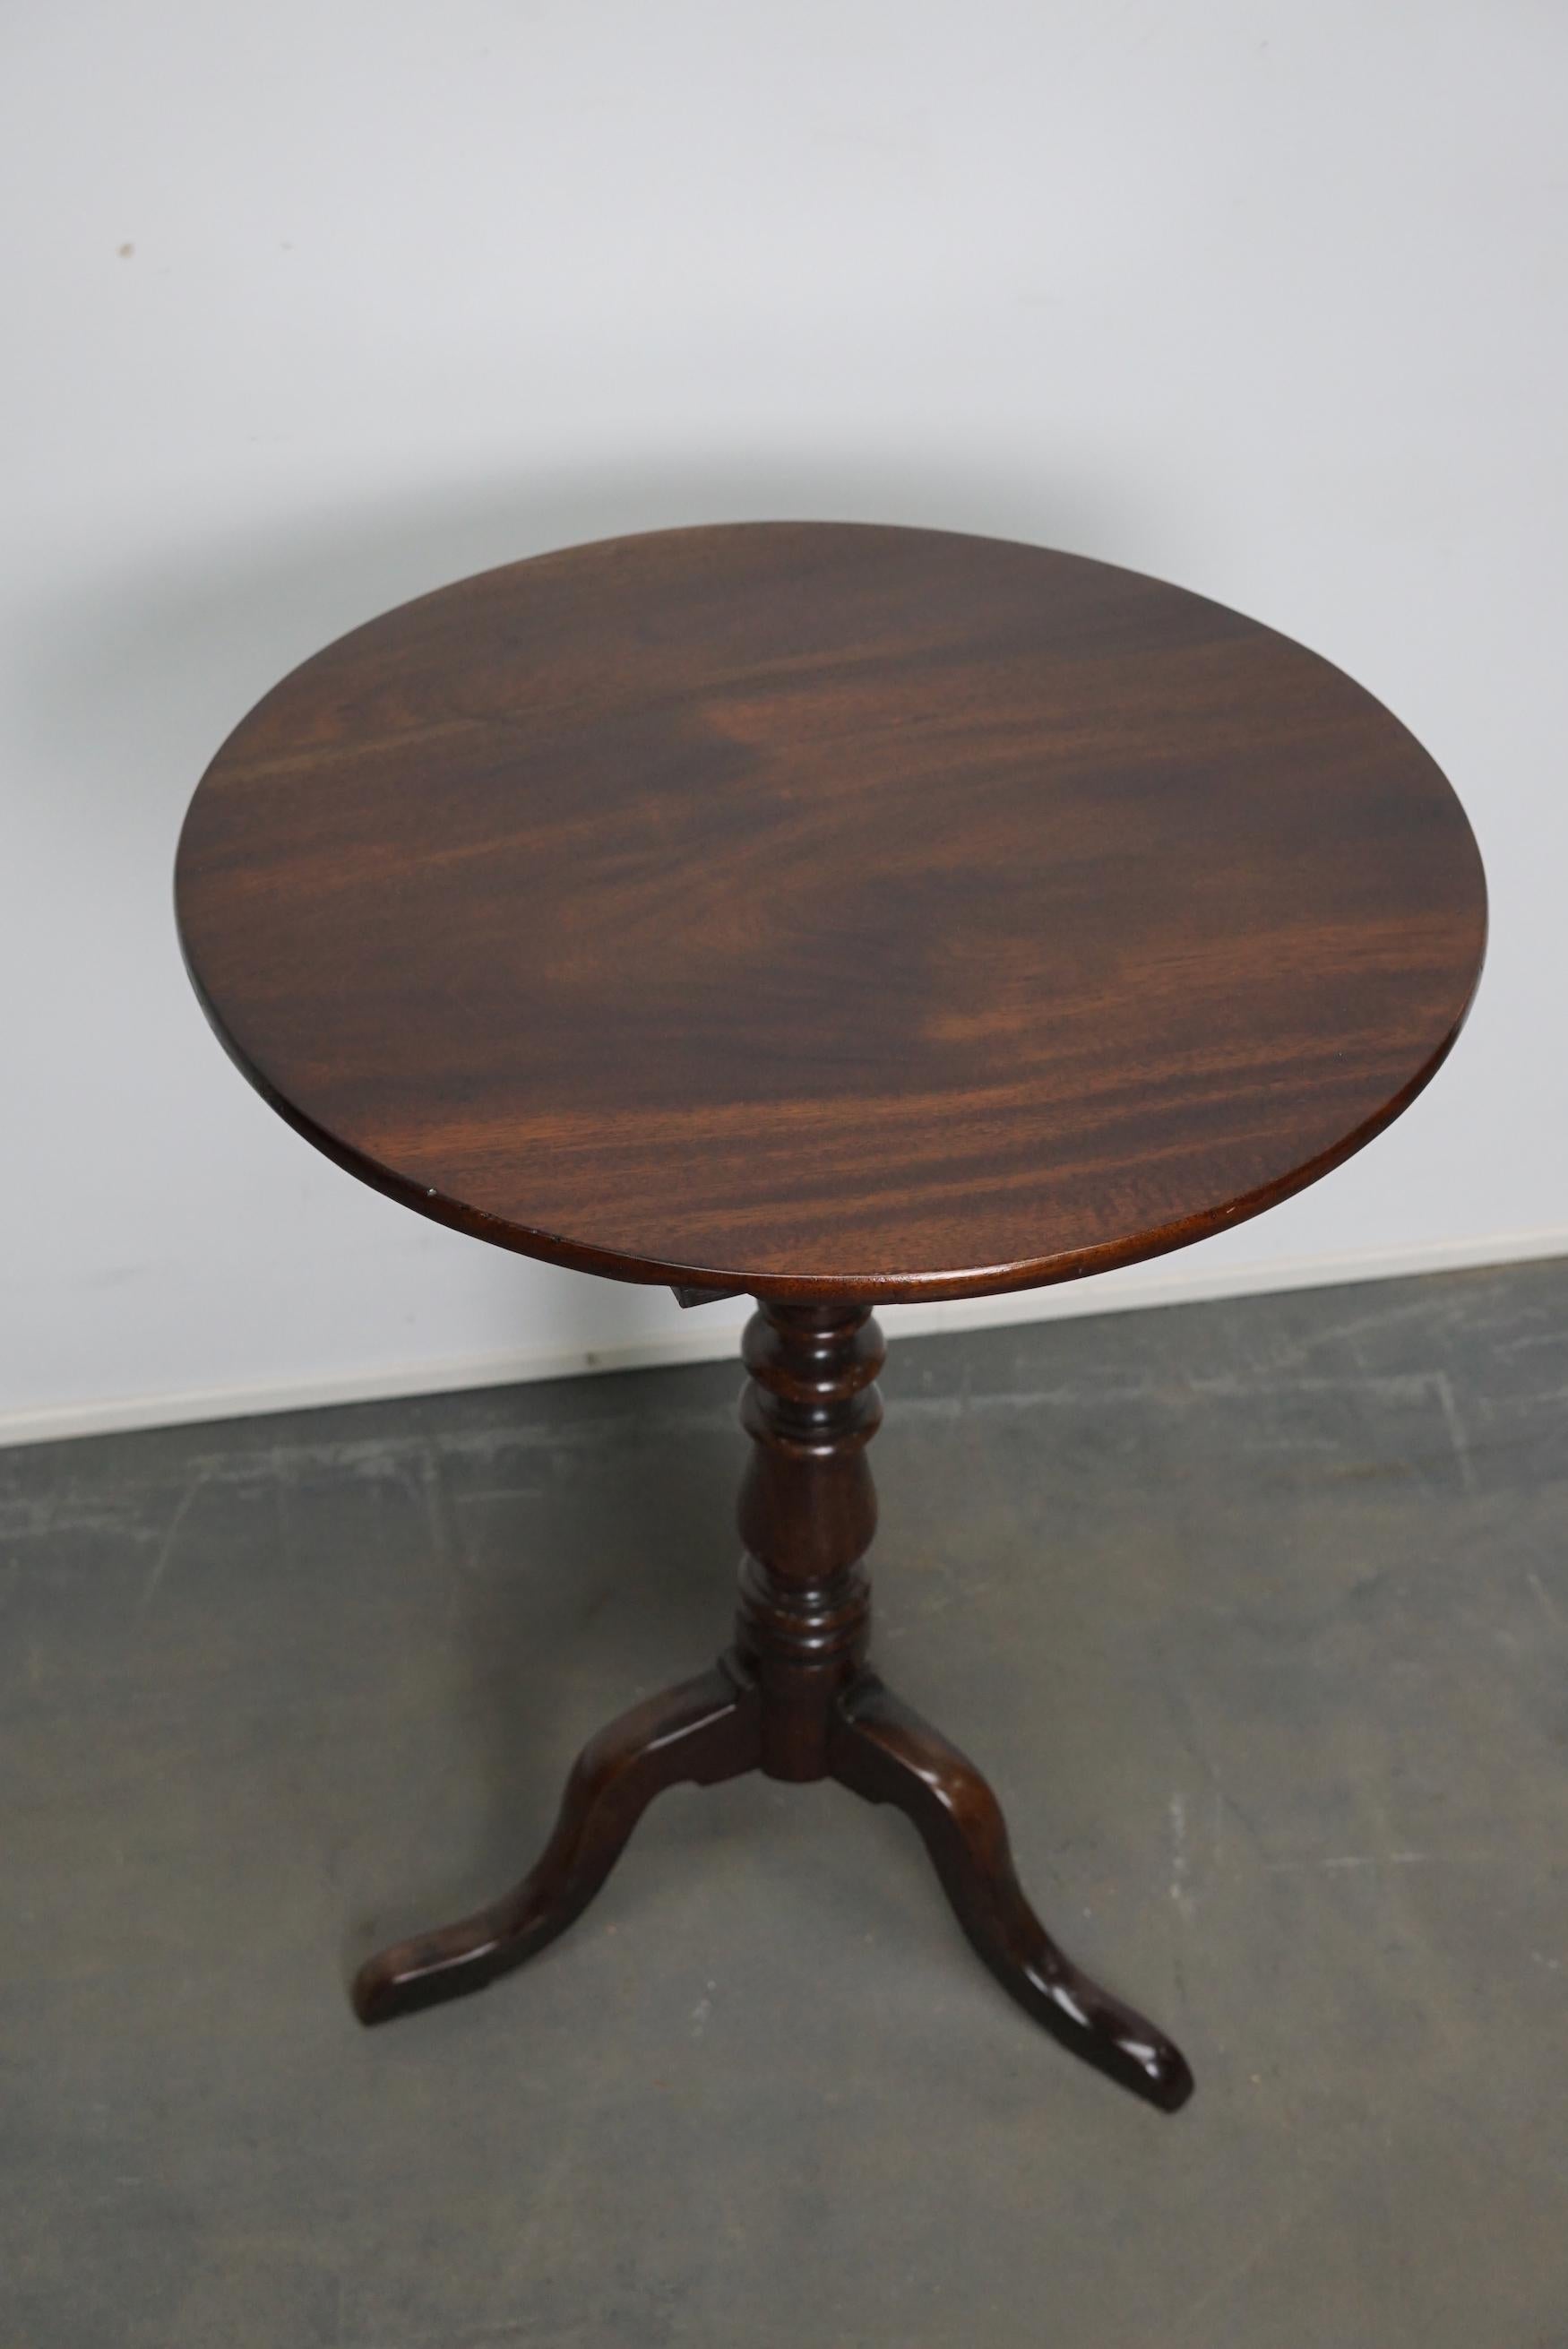 Jolie table à vin en acajou du milieu du 19e siècle. Cette table présente un plateau en acajou massif sur des pieds tripodes. La table a été restaurée et est en très bon état.